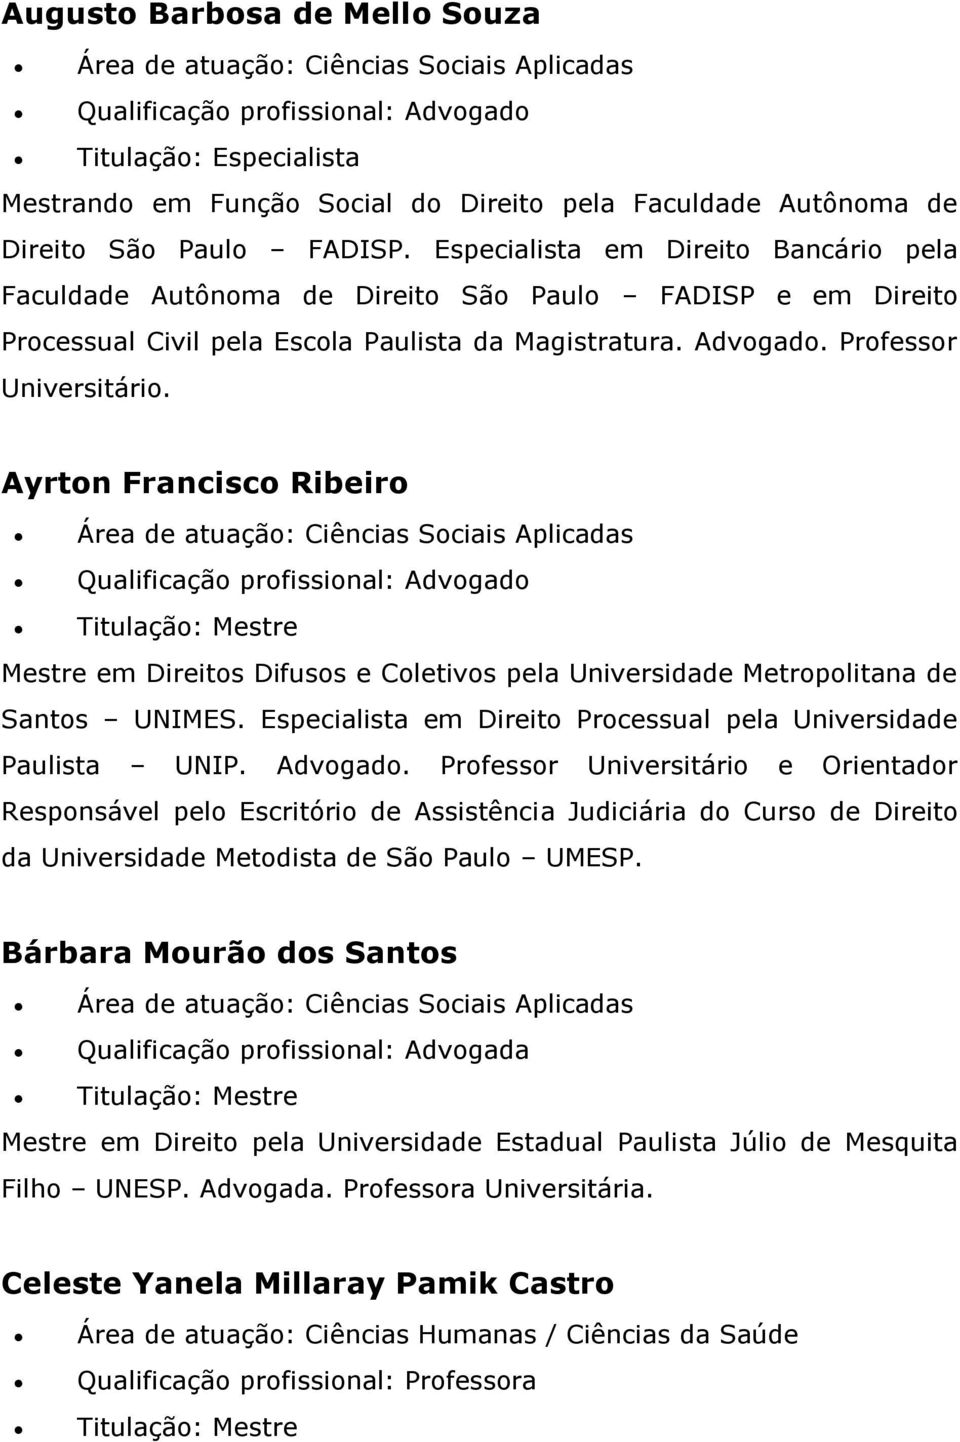 Ayrton Francisco Ribeiro Santos UNIMES. Especialista em Direito Processual pela Universidade Paulista UNIP. Advogado.